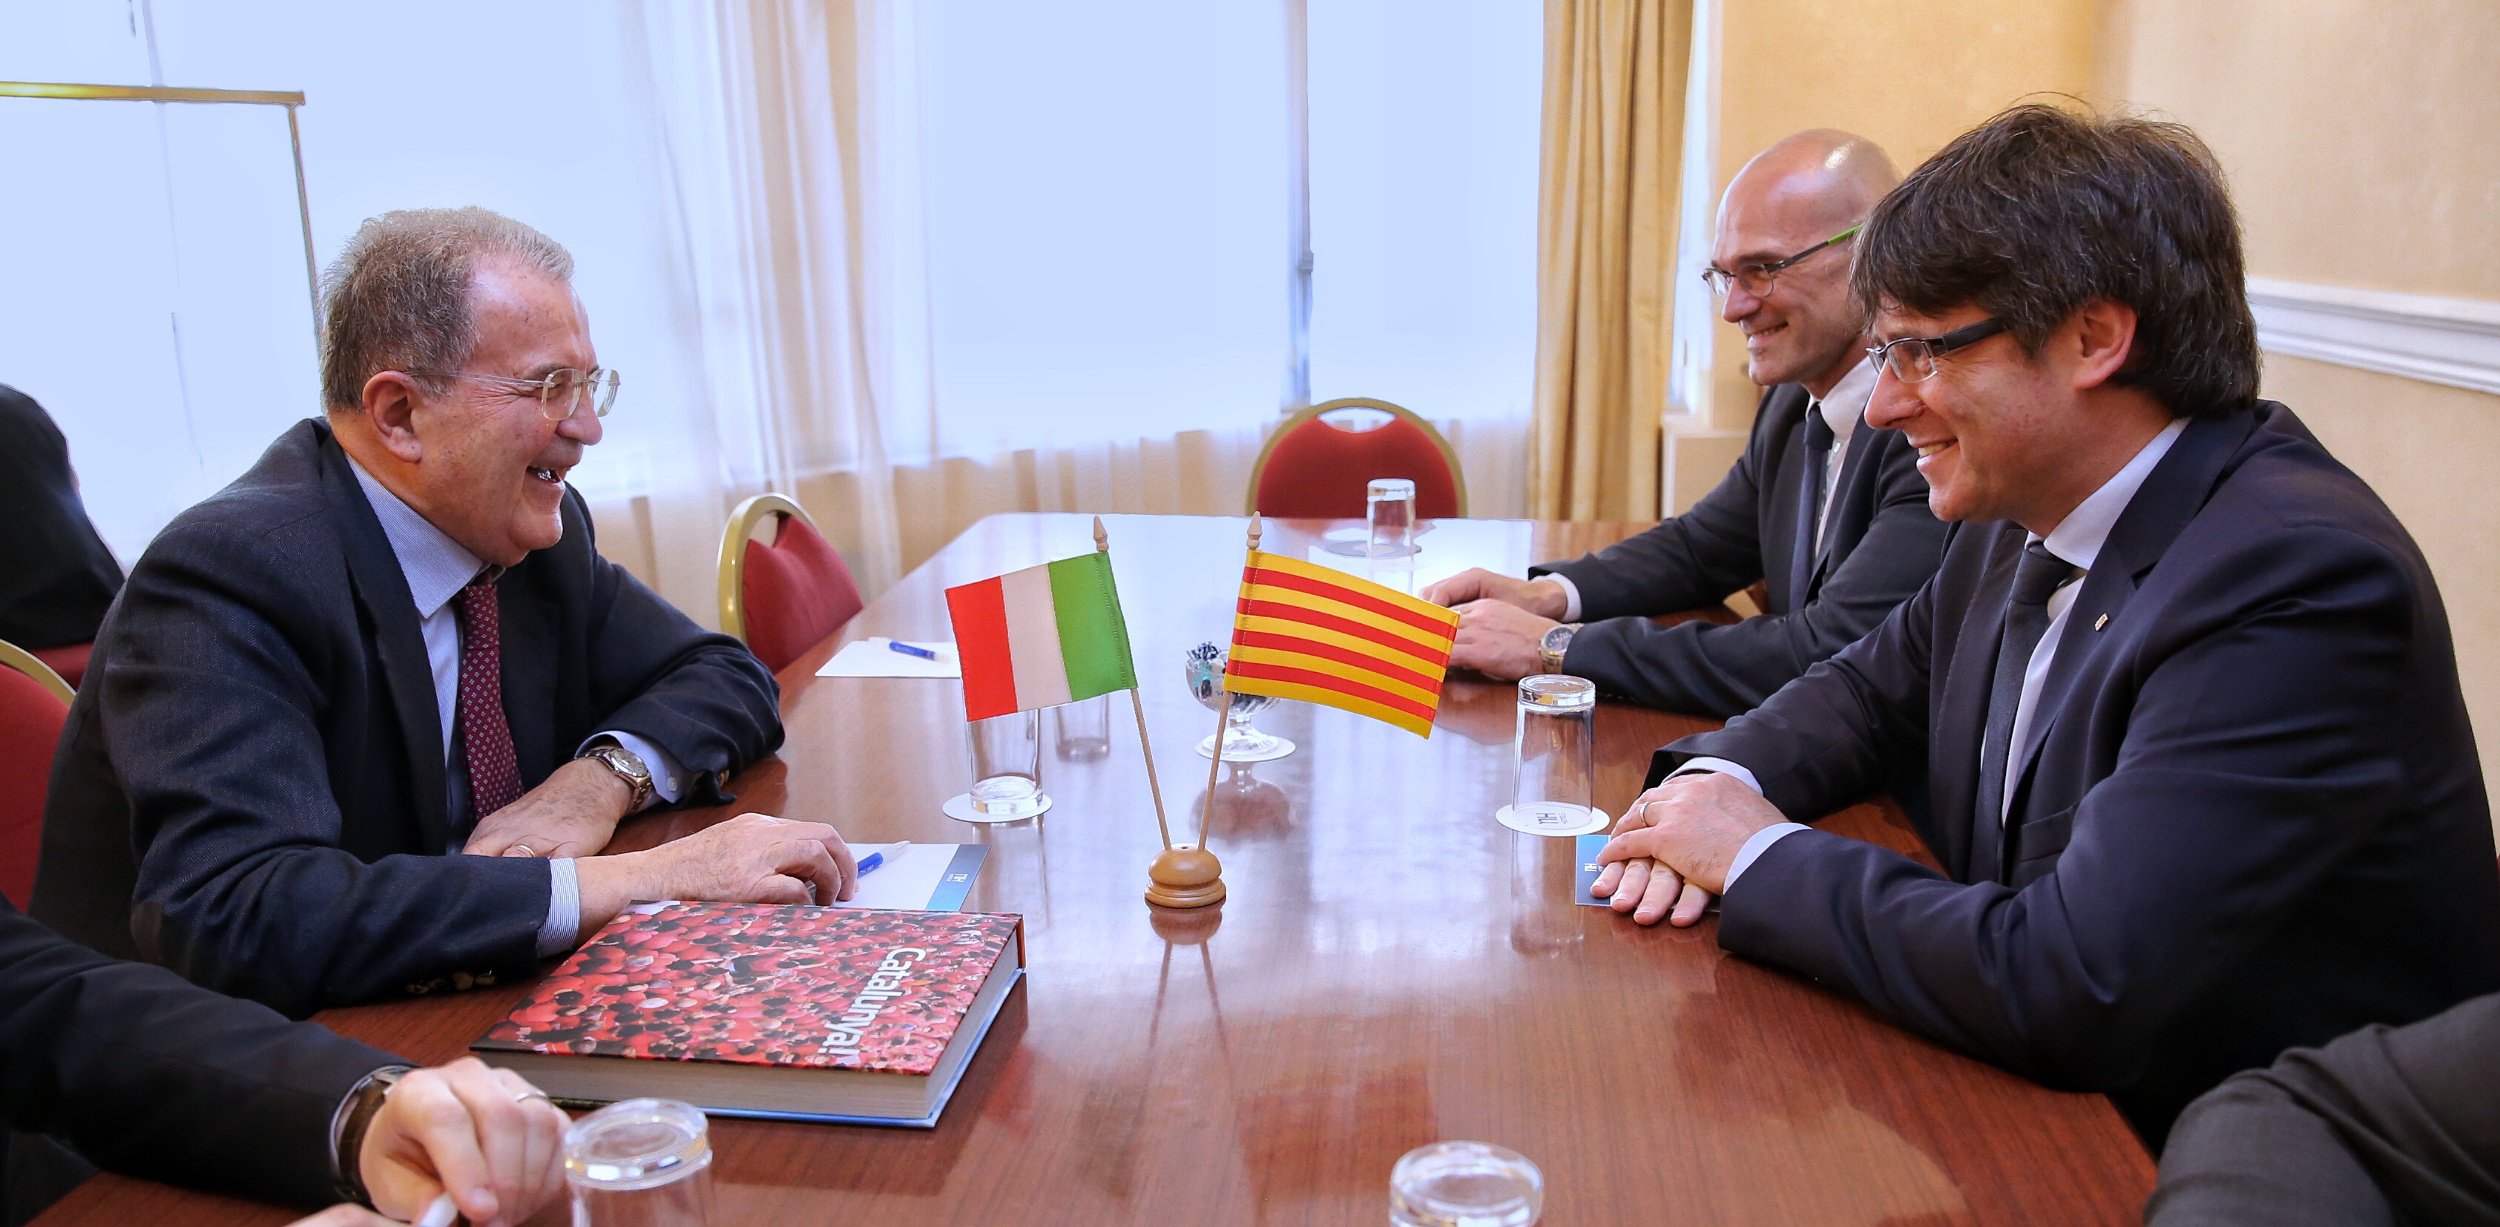 Prodi reclama "el retorn al diàleg" entre els governs català i espanyol